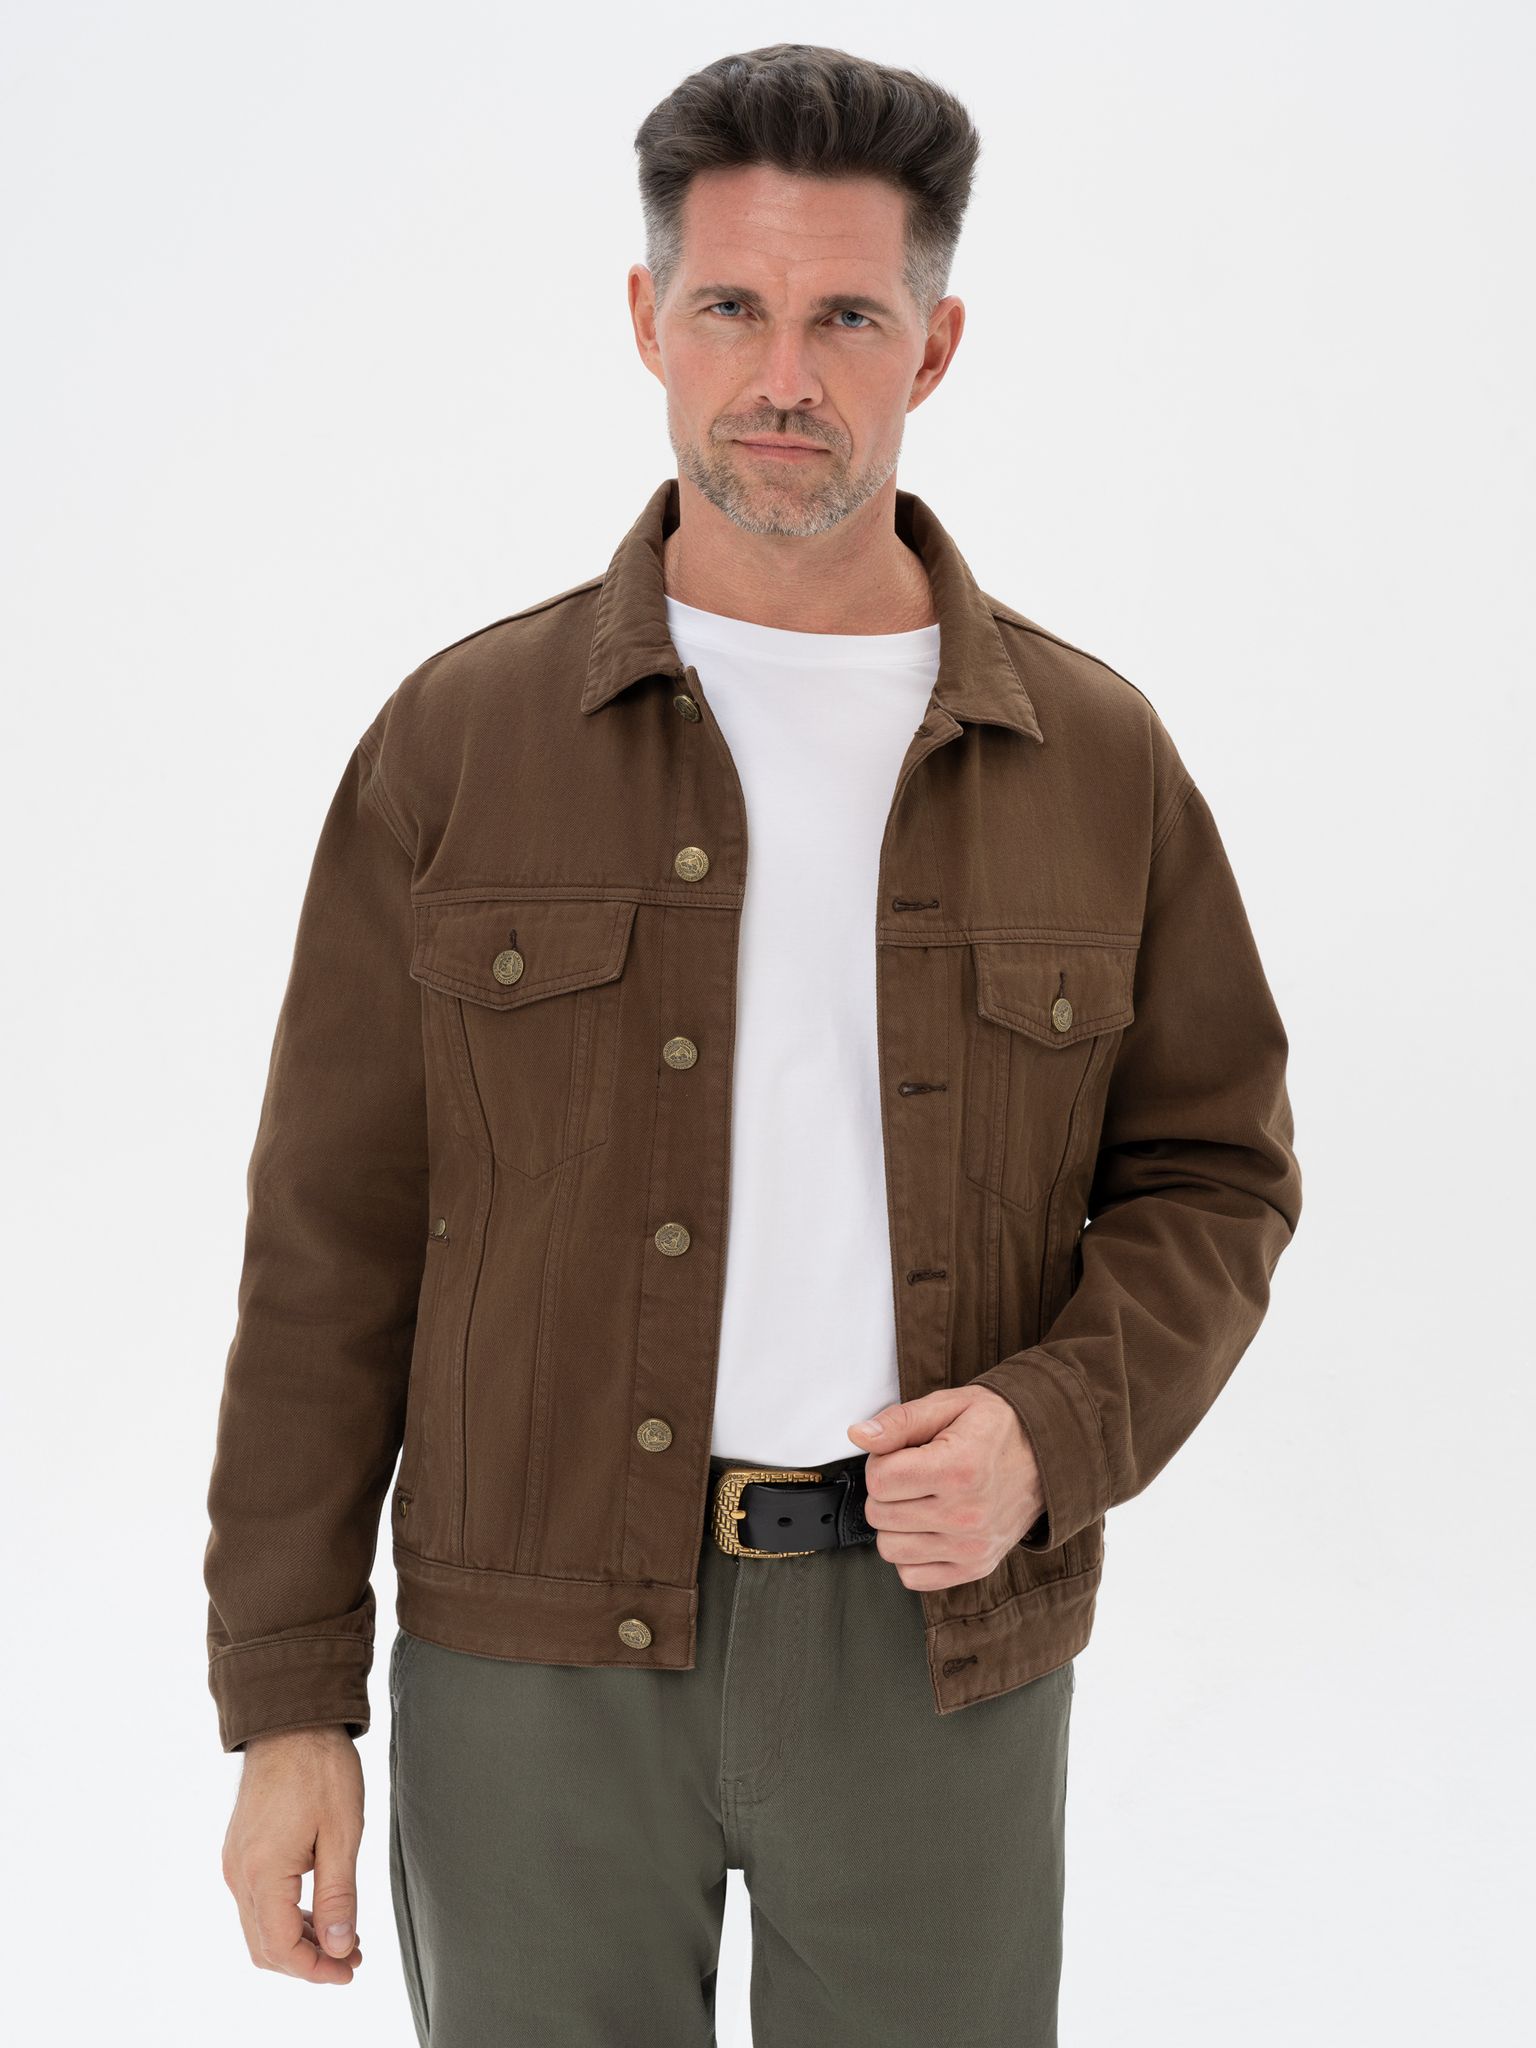 Джинсовая куртка мужская Великоросс JJ коричневая 56/182-192 RU